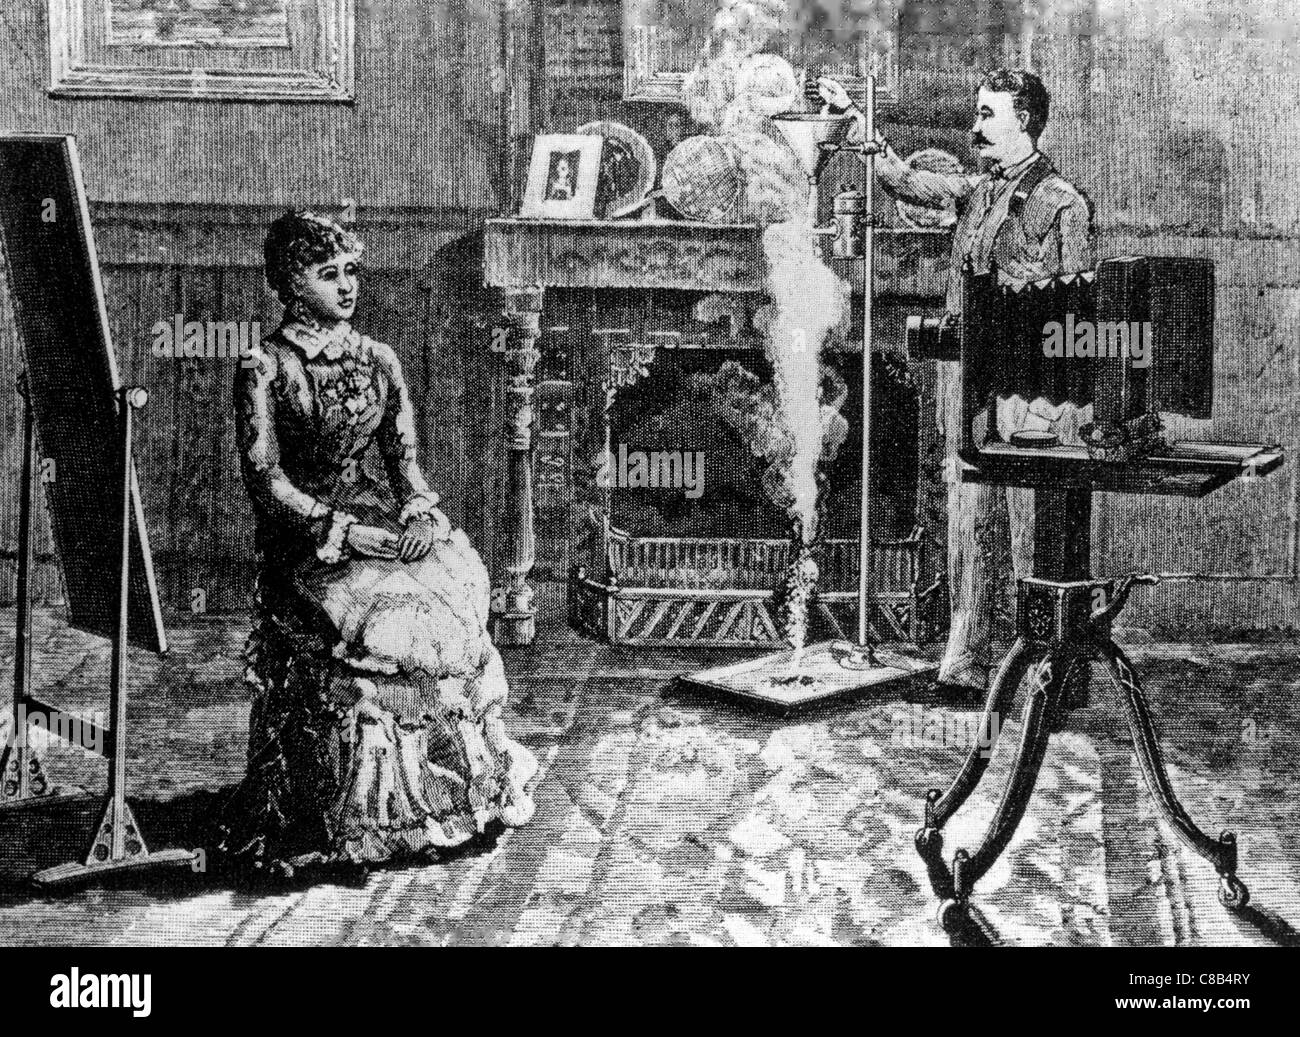 Primeras fotografías con el uso de flash de magnesio,Berlín 1887 Foto de stock